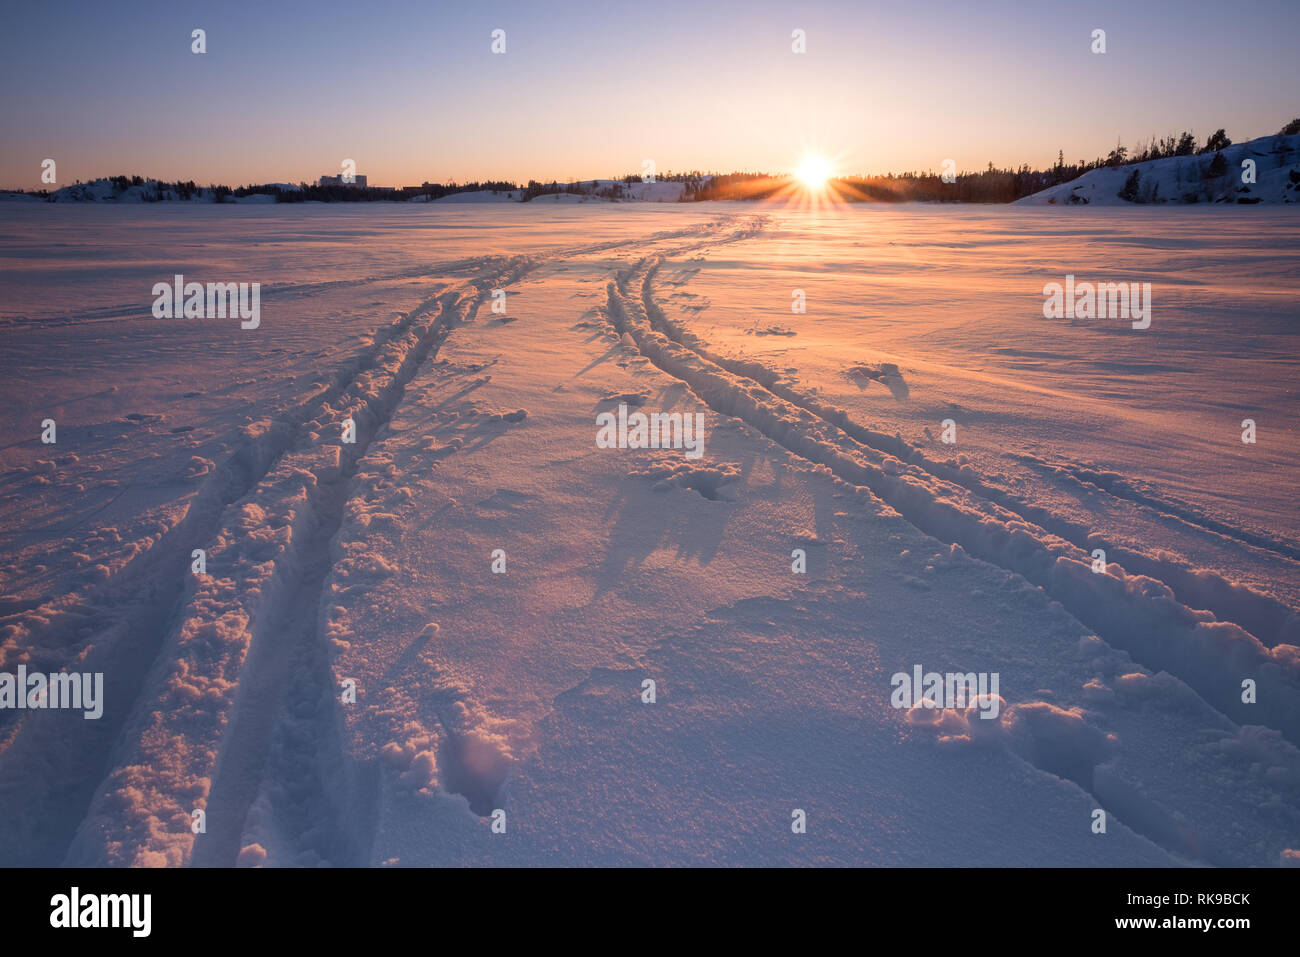 Pistes de ski de fond au coucher du soleil sur le lac Frozen Frame à Yellowknife, Territoires du Nord-Ouest, Canada. Banque D'Images